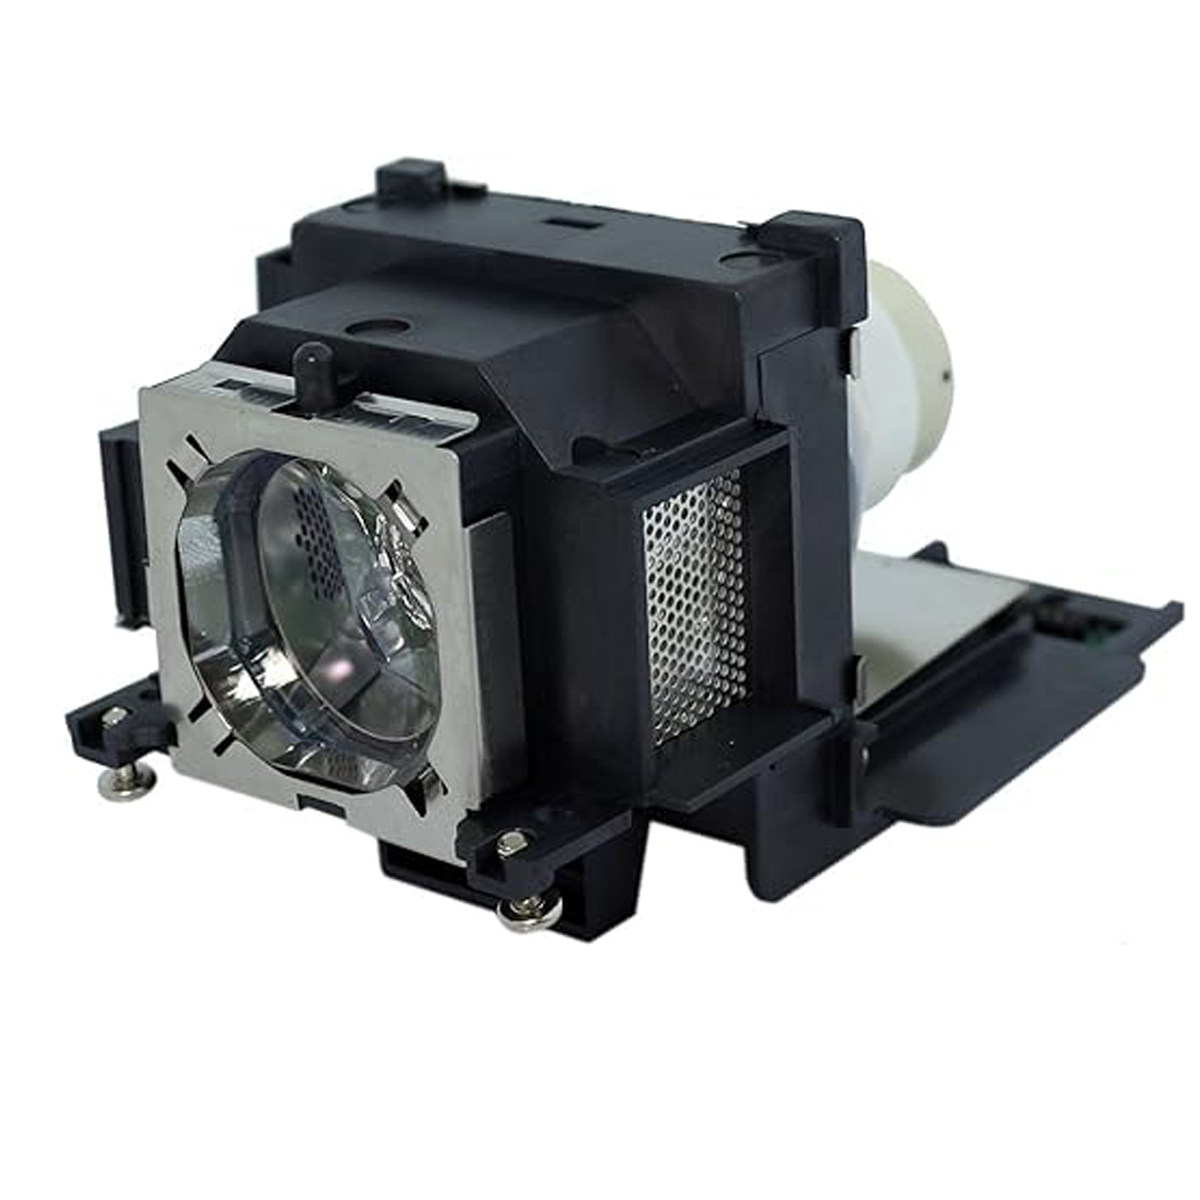 Replacement projector lamp ET-LAV100 For PANASONIC PT-VW300 PT-VW330 PT-VX400